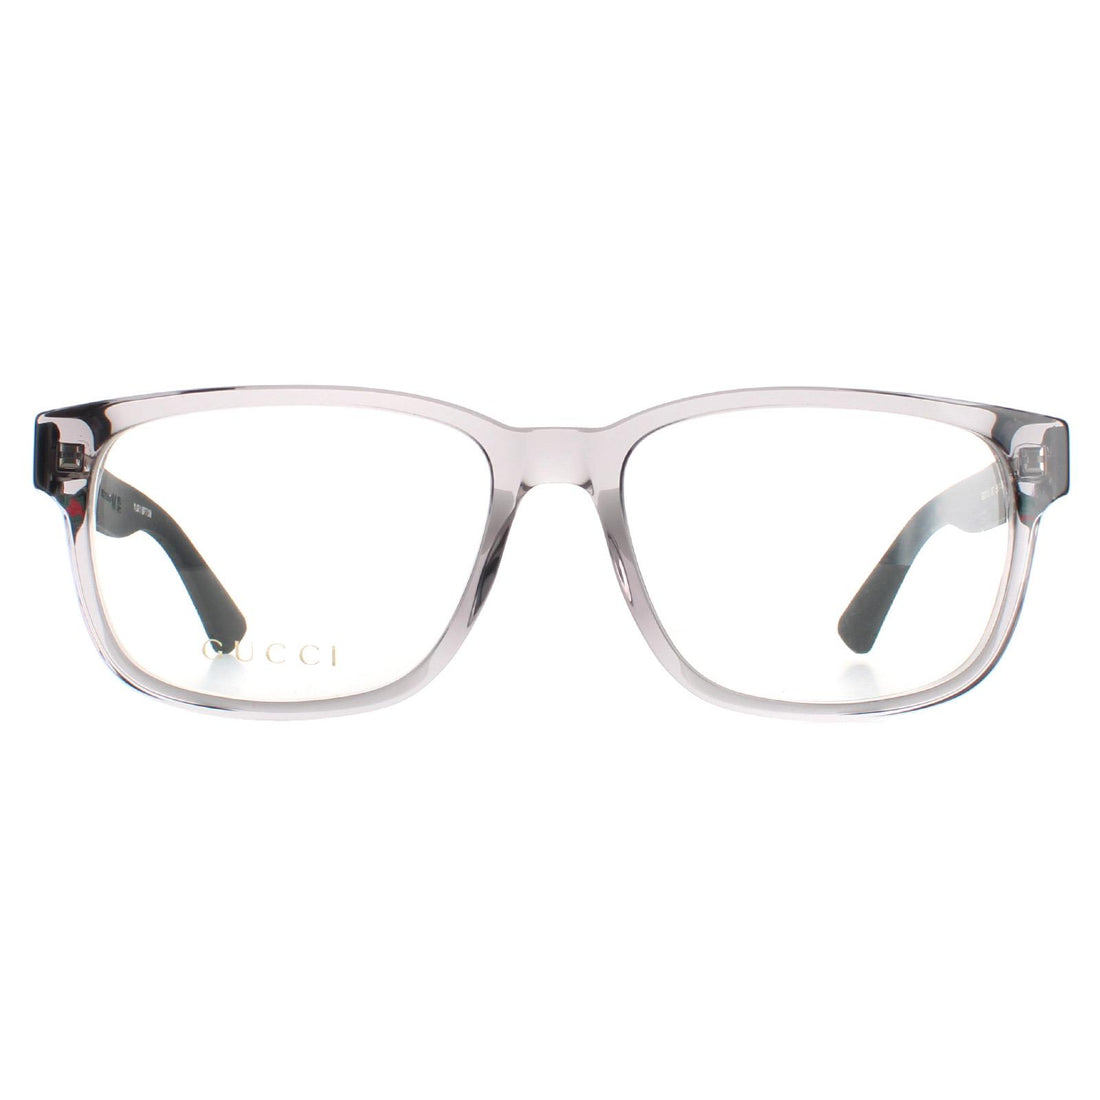 Gucci GG0011O Glasses Frames Transparent Grey